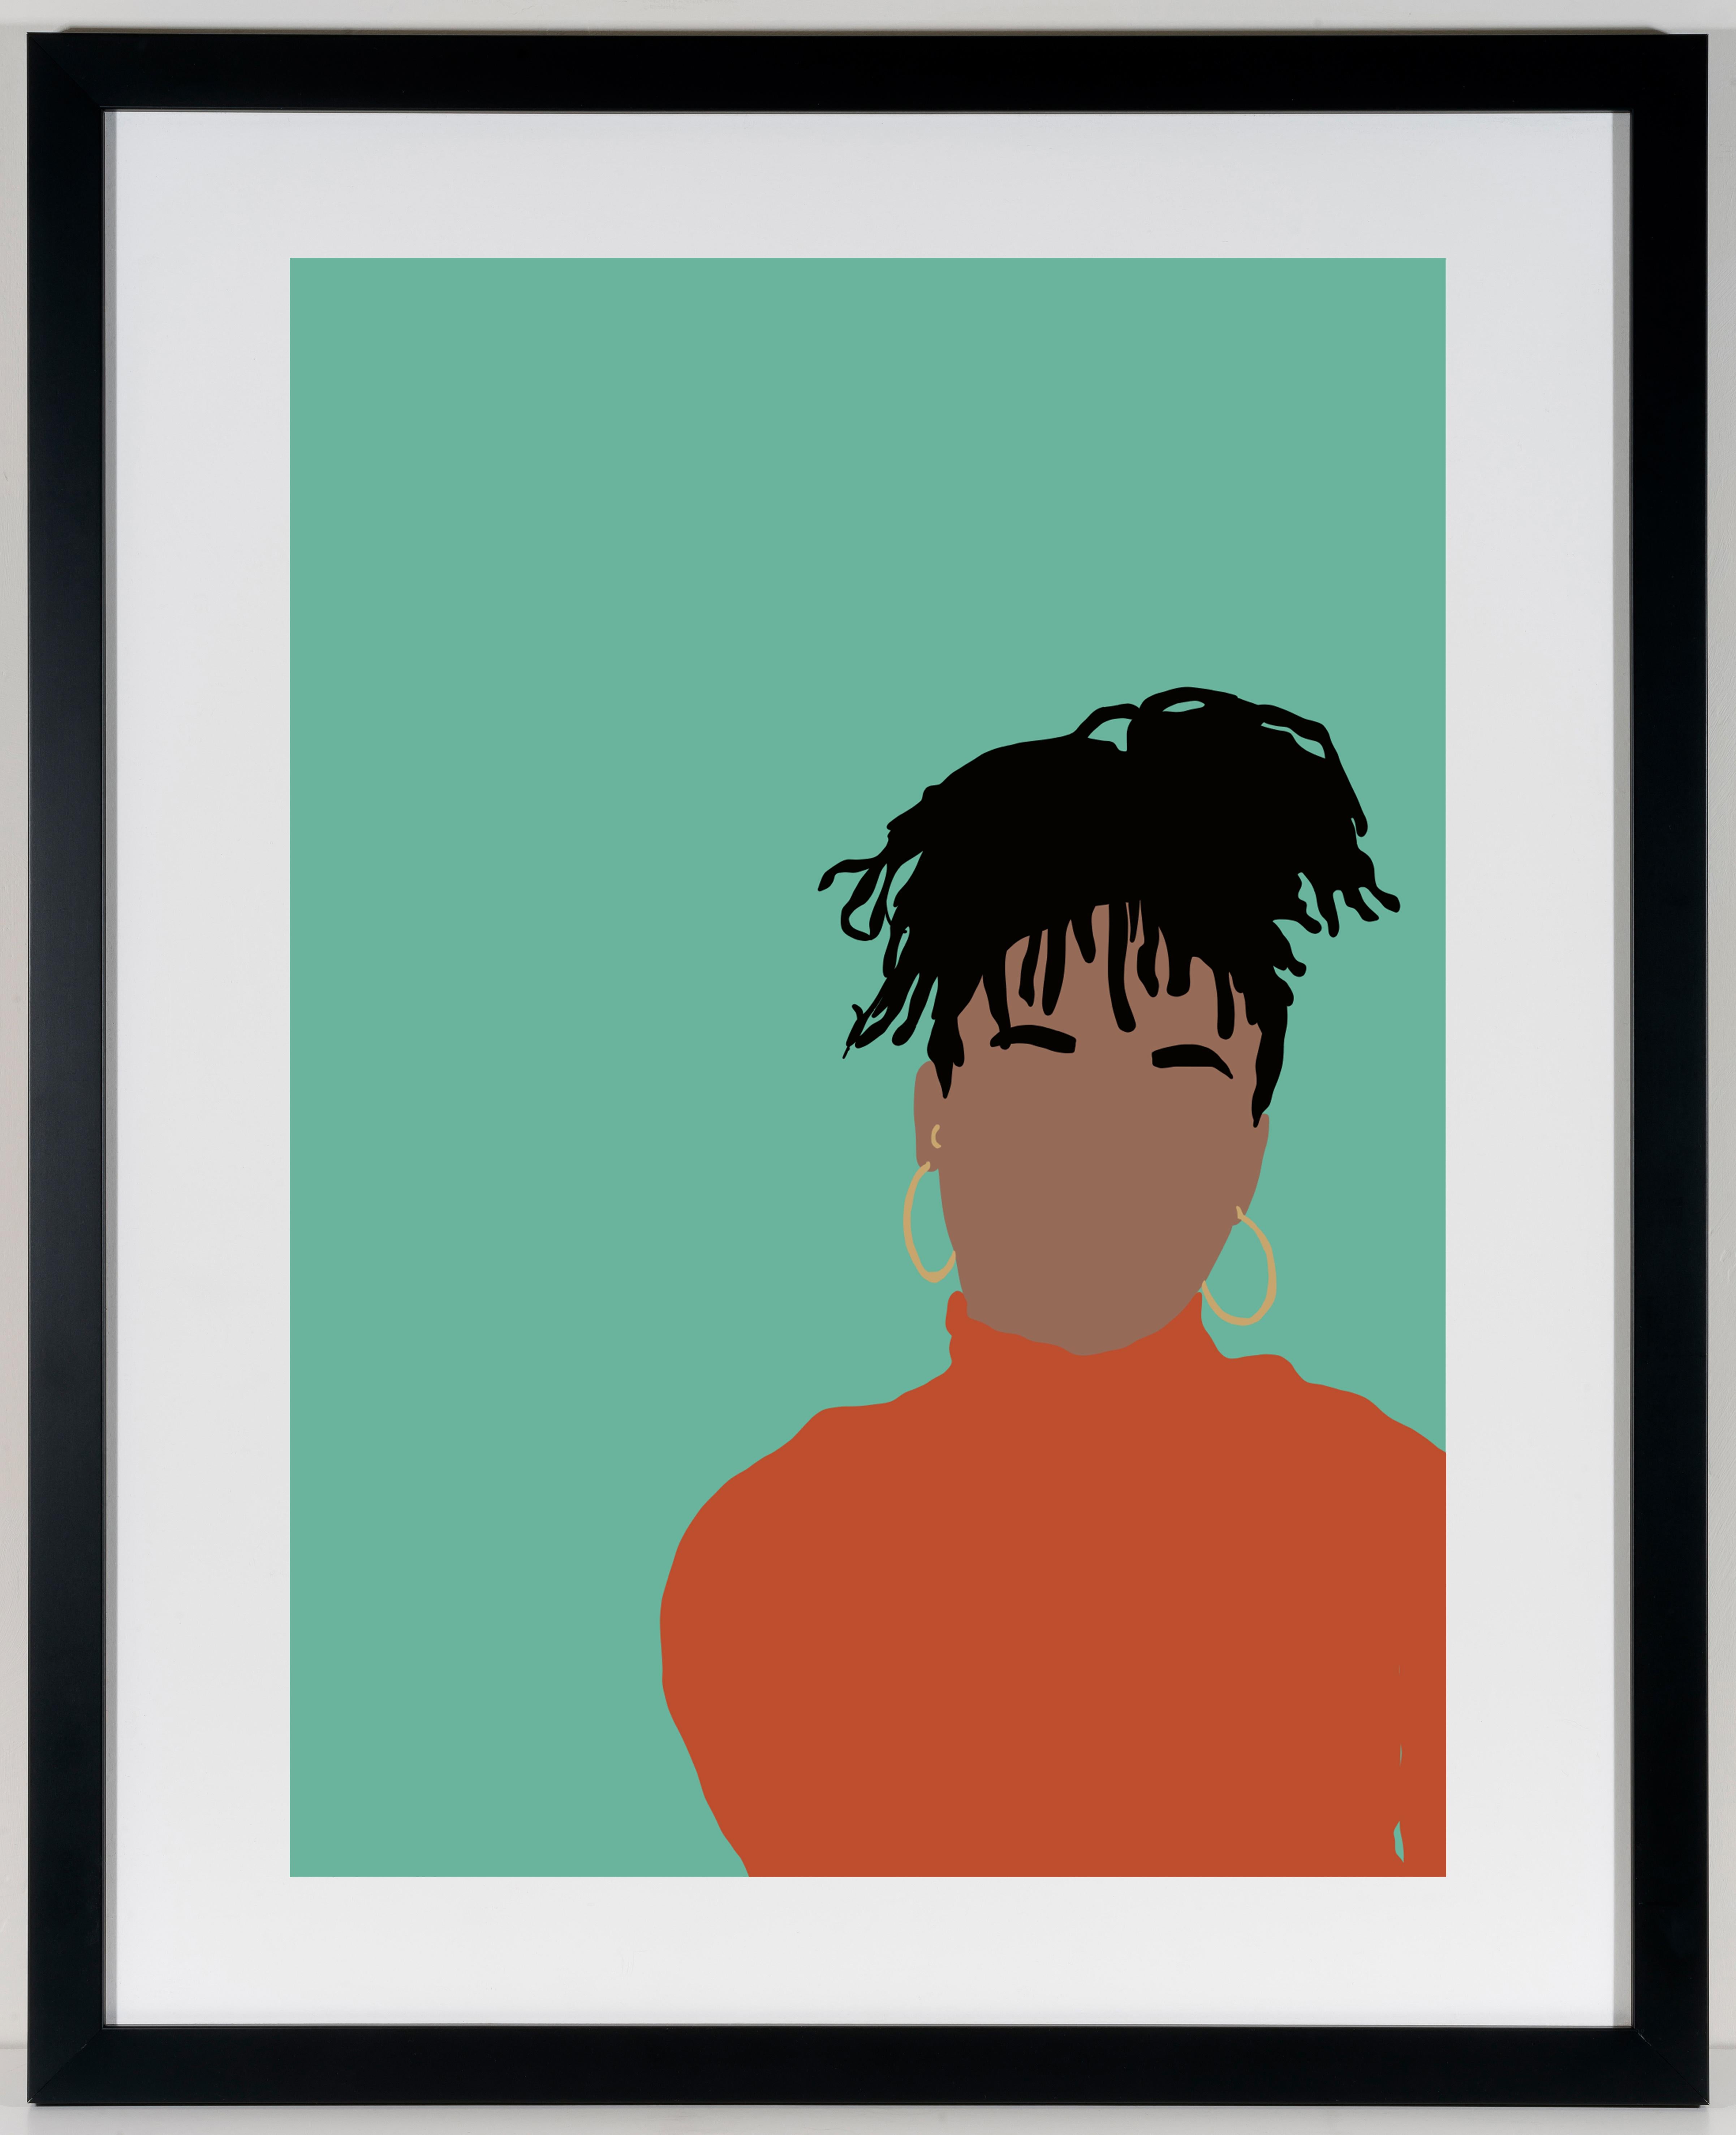 Real - Digitale Illustration Schwarze/Braune Figur mit Zifferblättern in Teal + Orange Rahmen – Print von Samantha Viotty